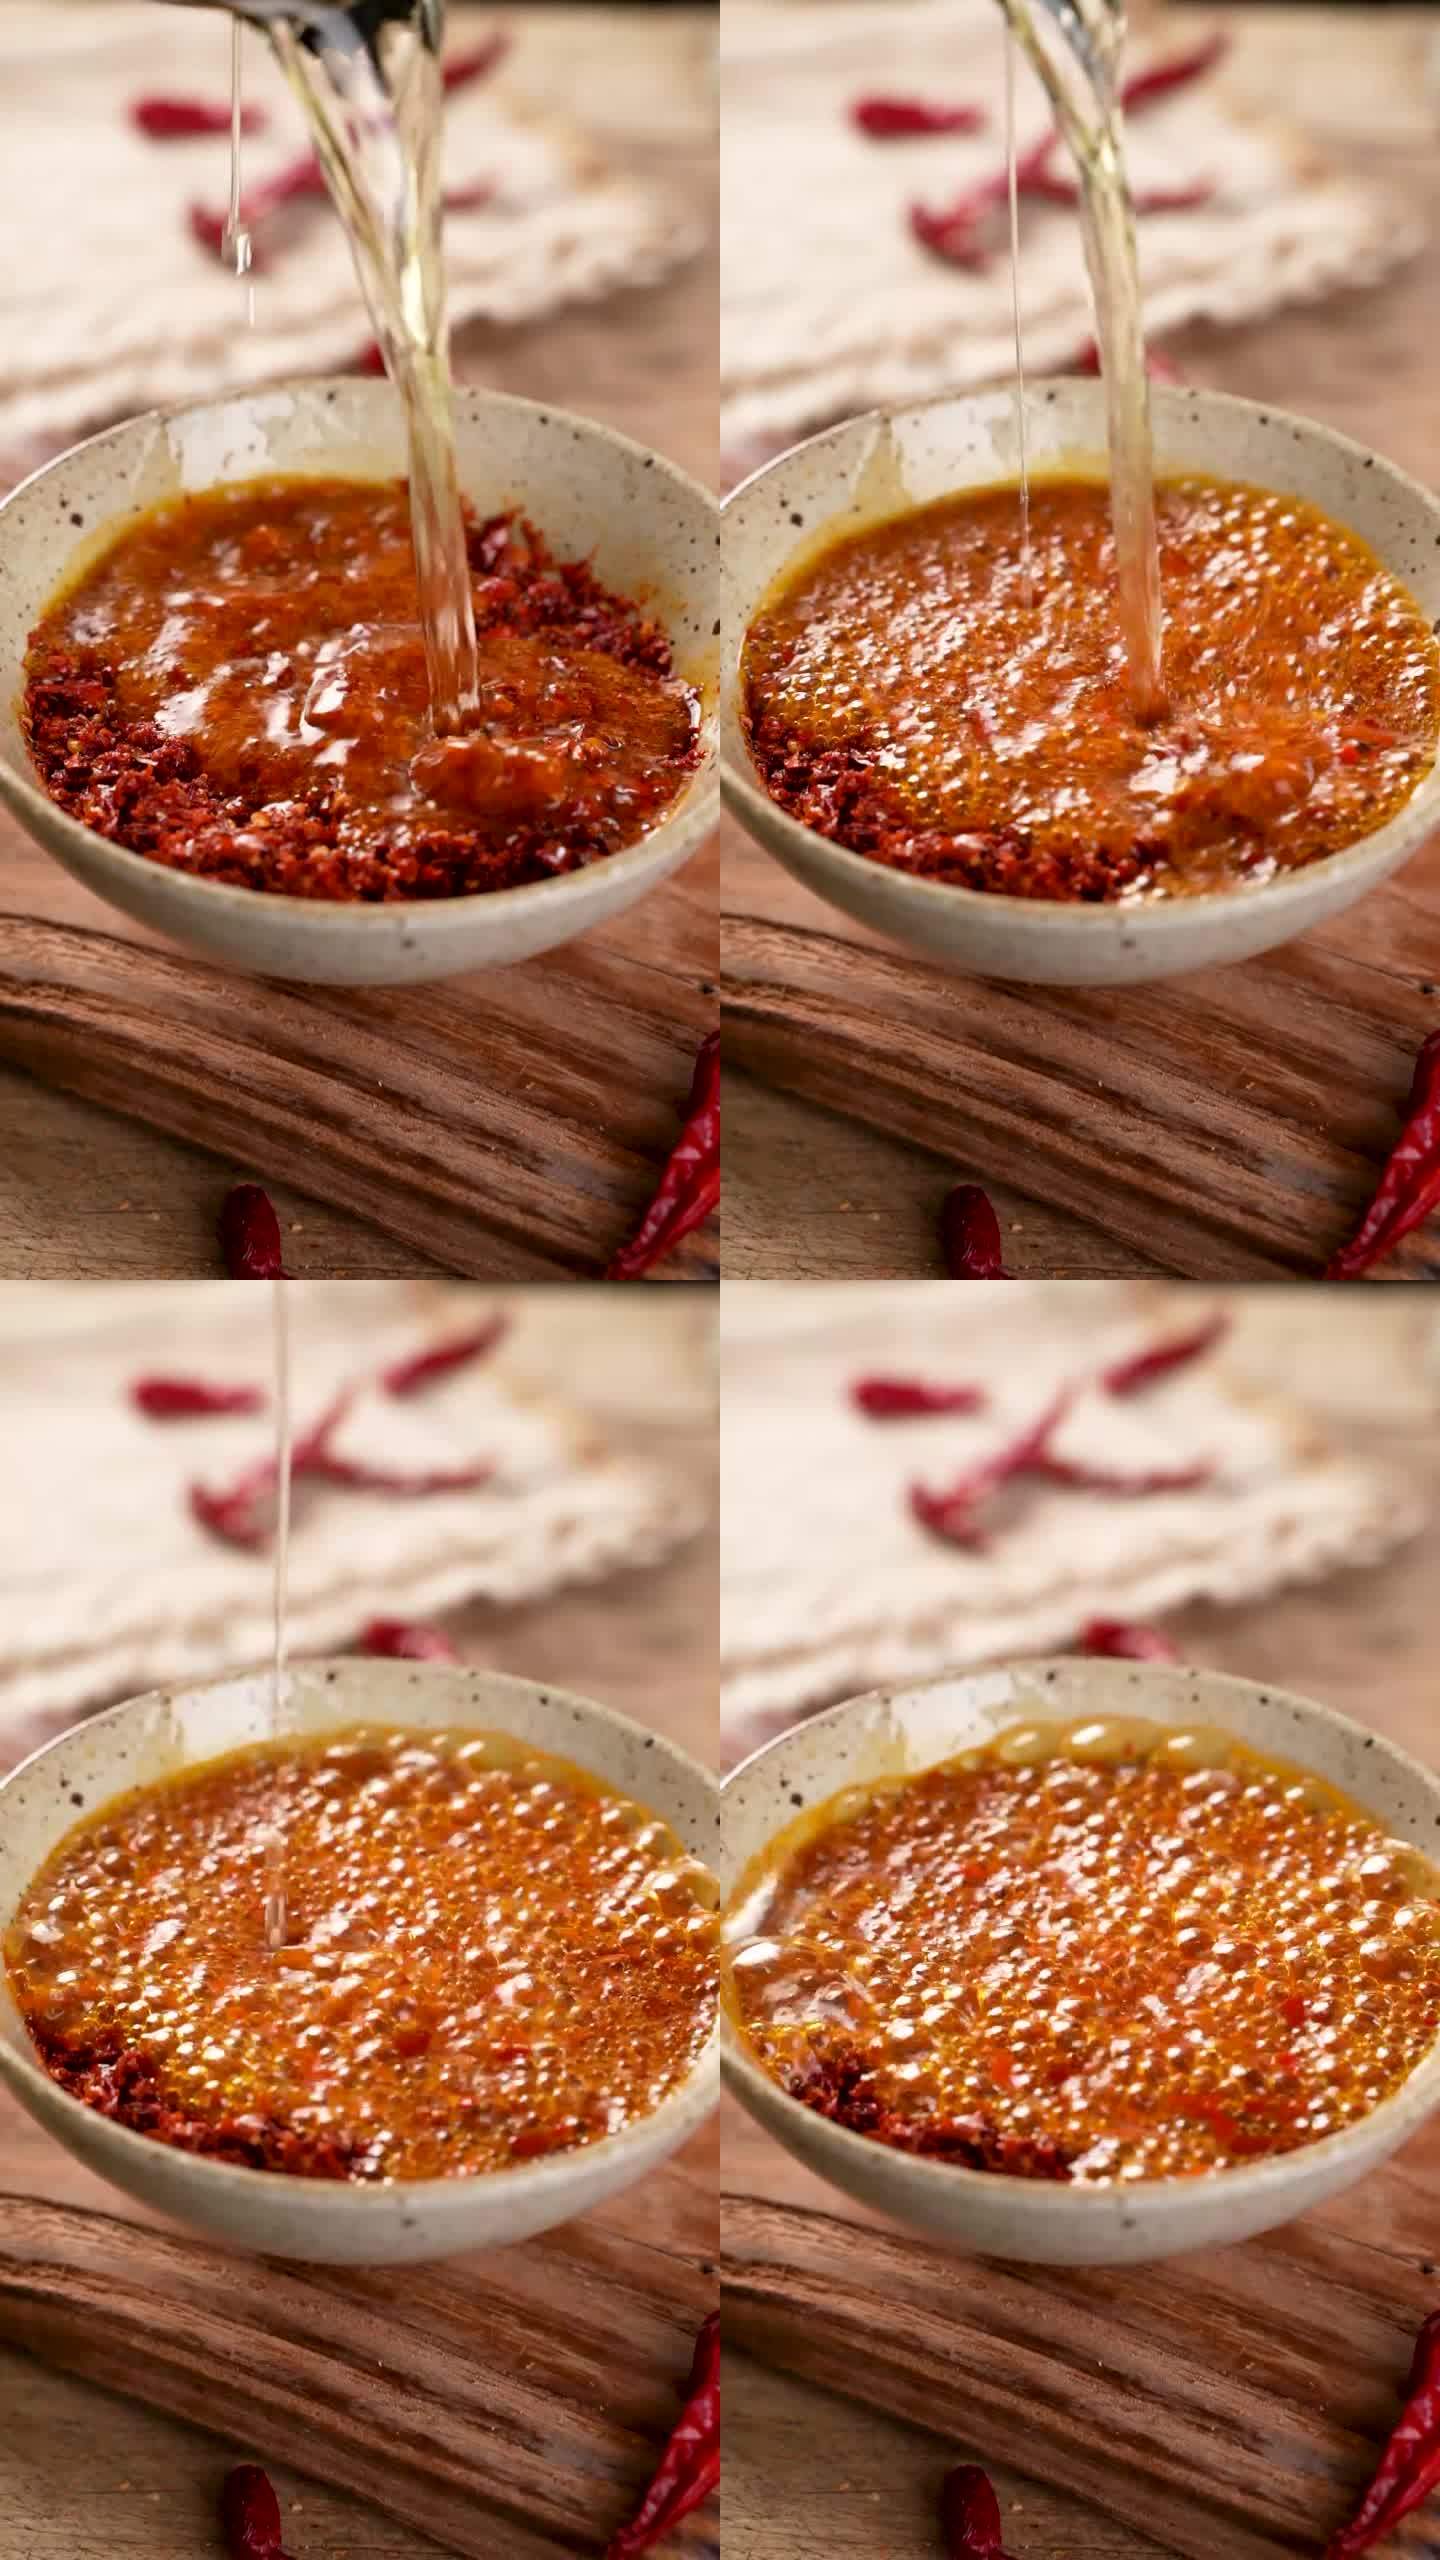 辣椒粉制作成辣椒油的过程广告